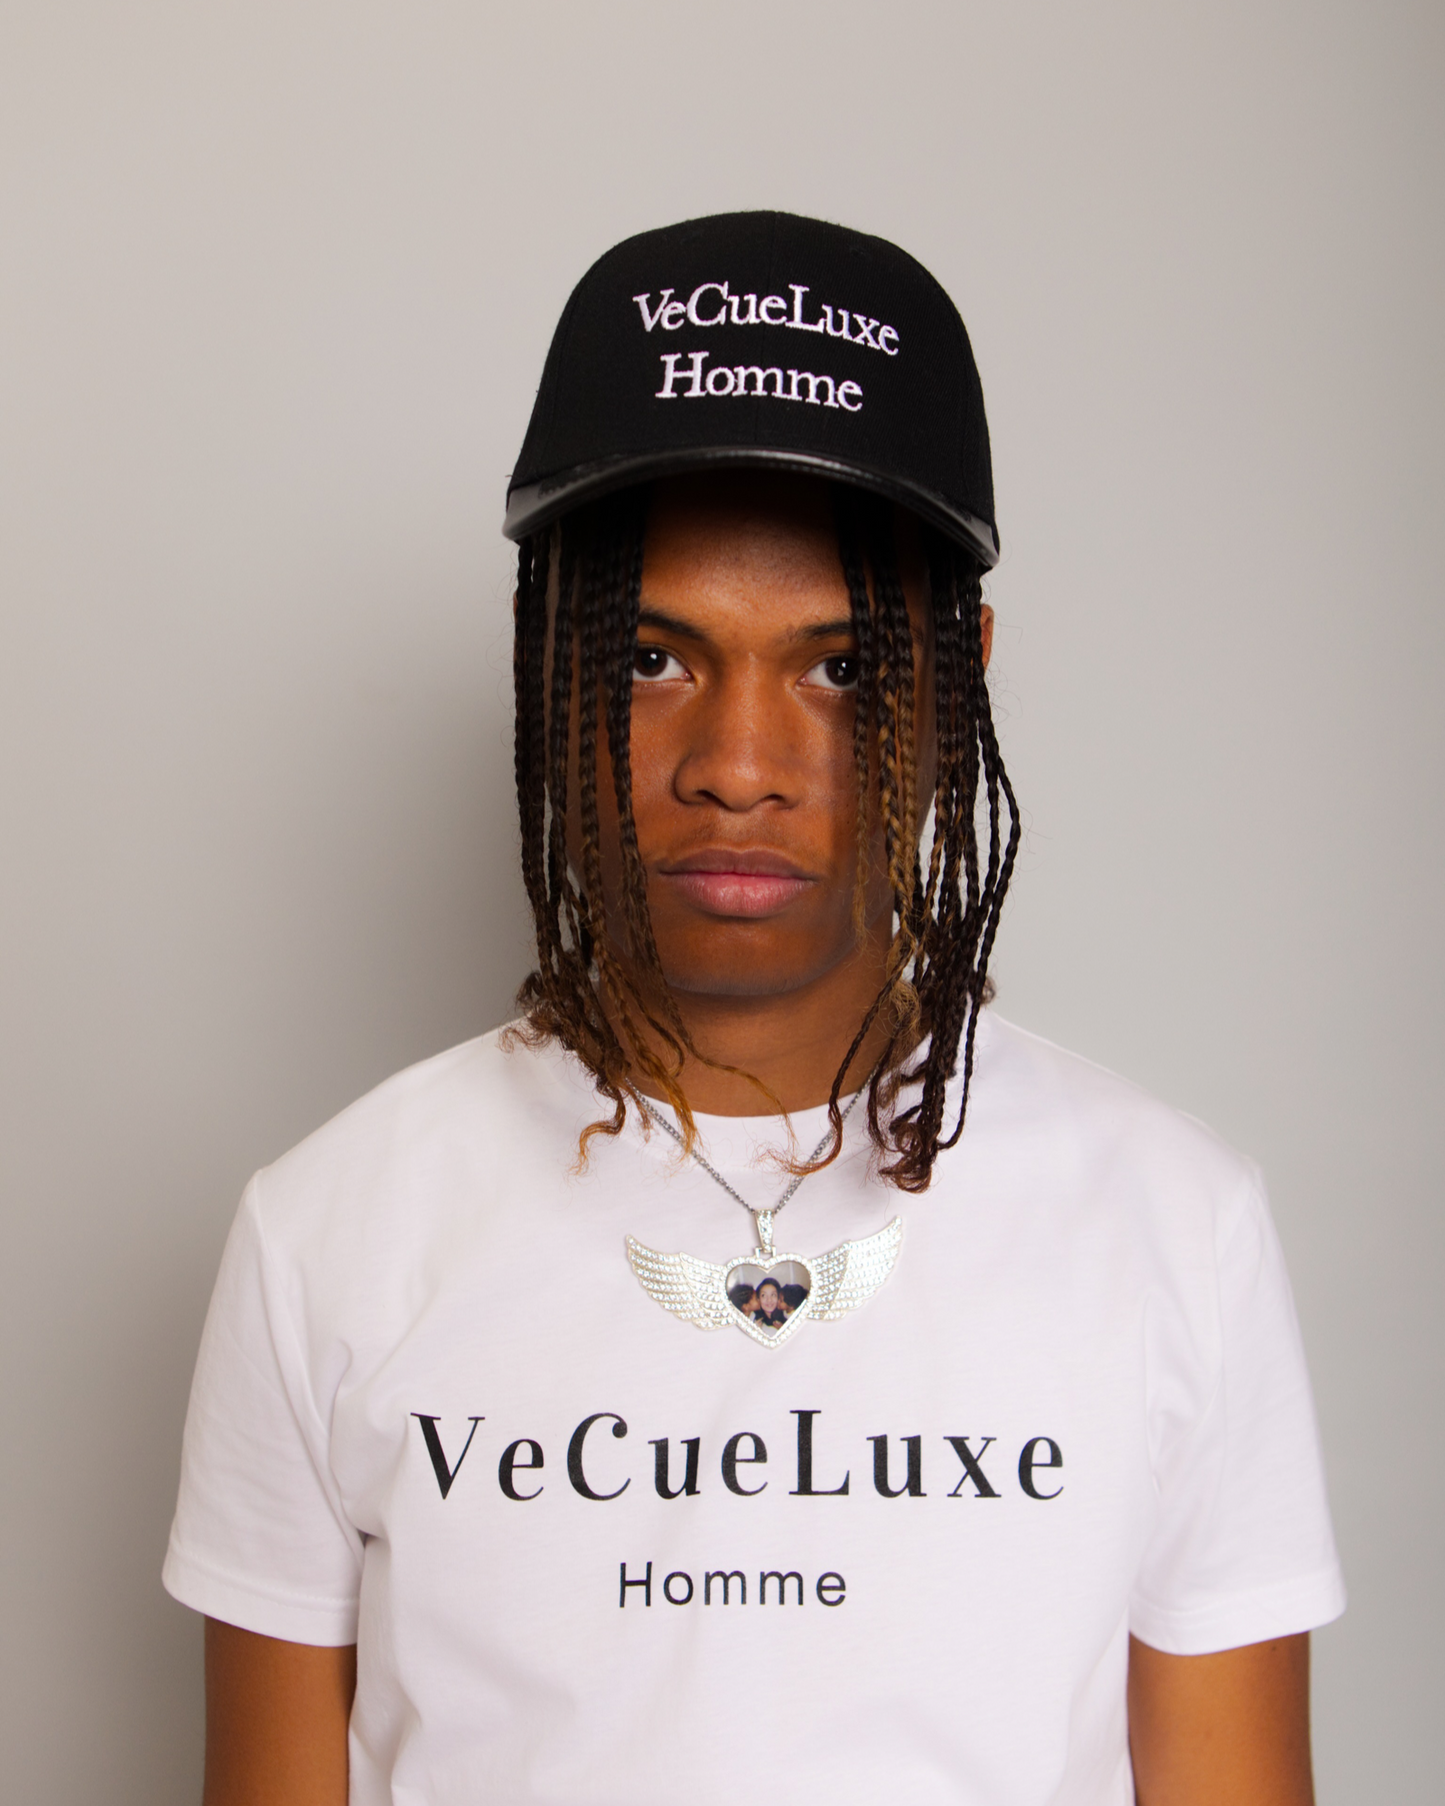 VeCueLuxe Homme hat